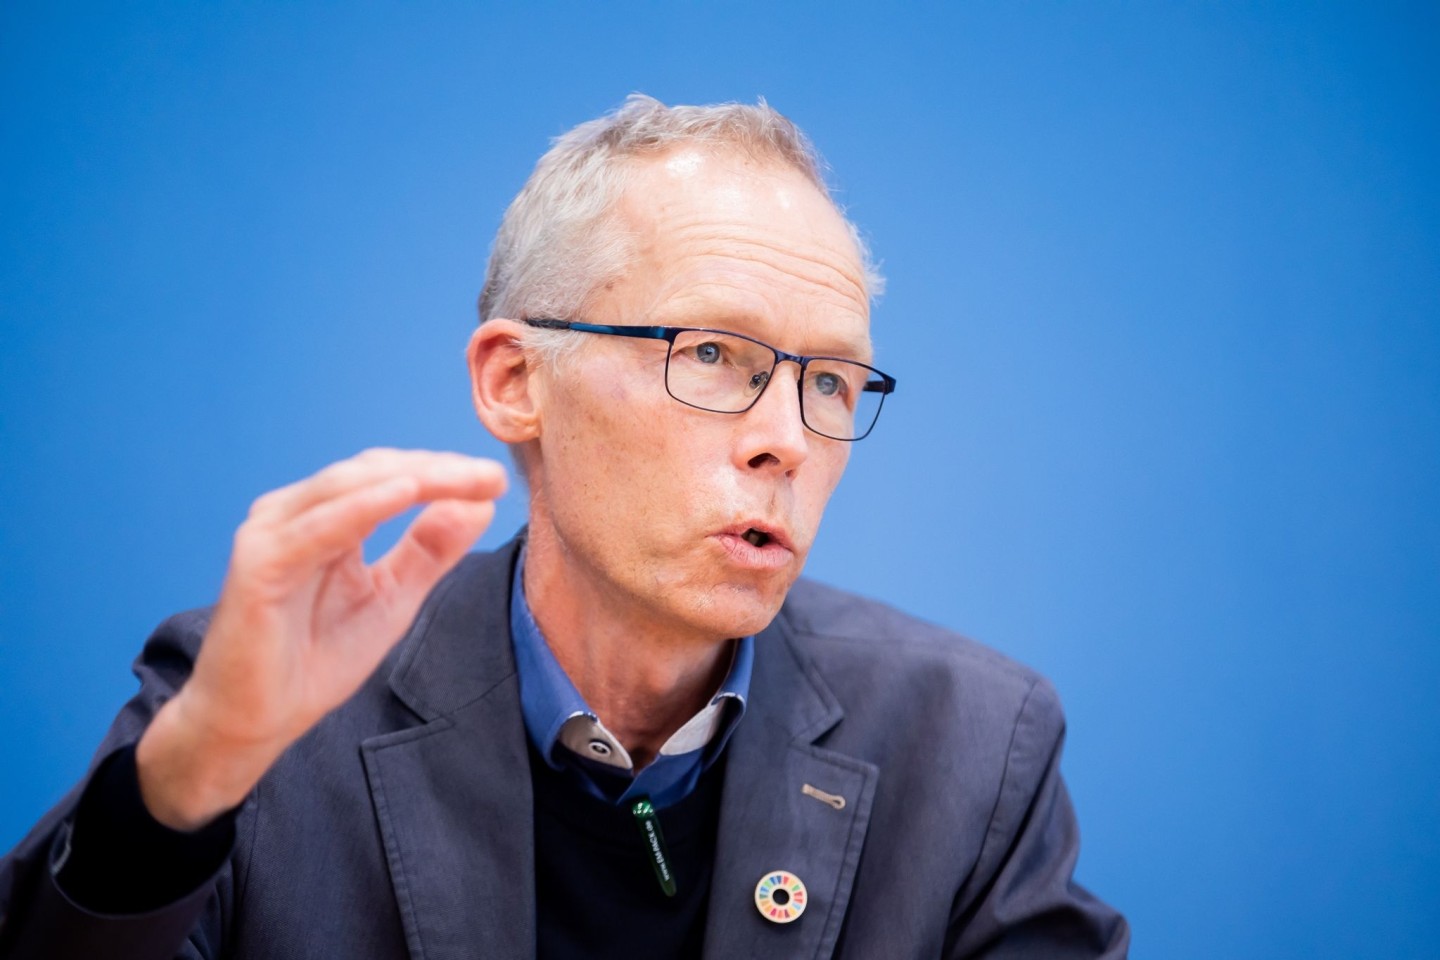 Johan Rockström ist Direktor des Potsdam-Instituts für Klimafolgen-Forschung.